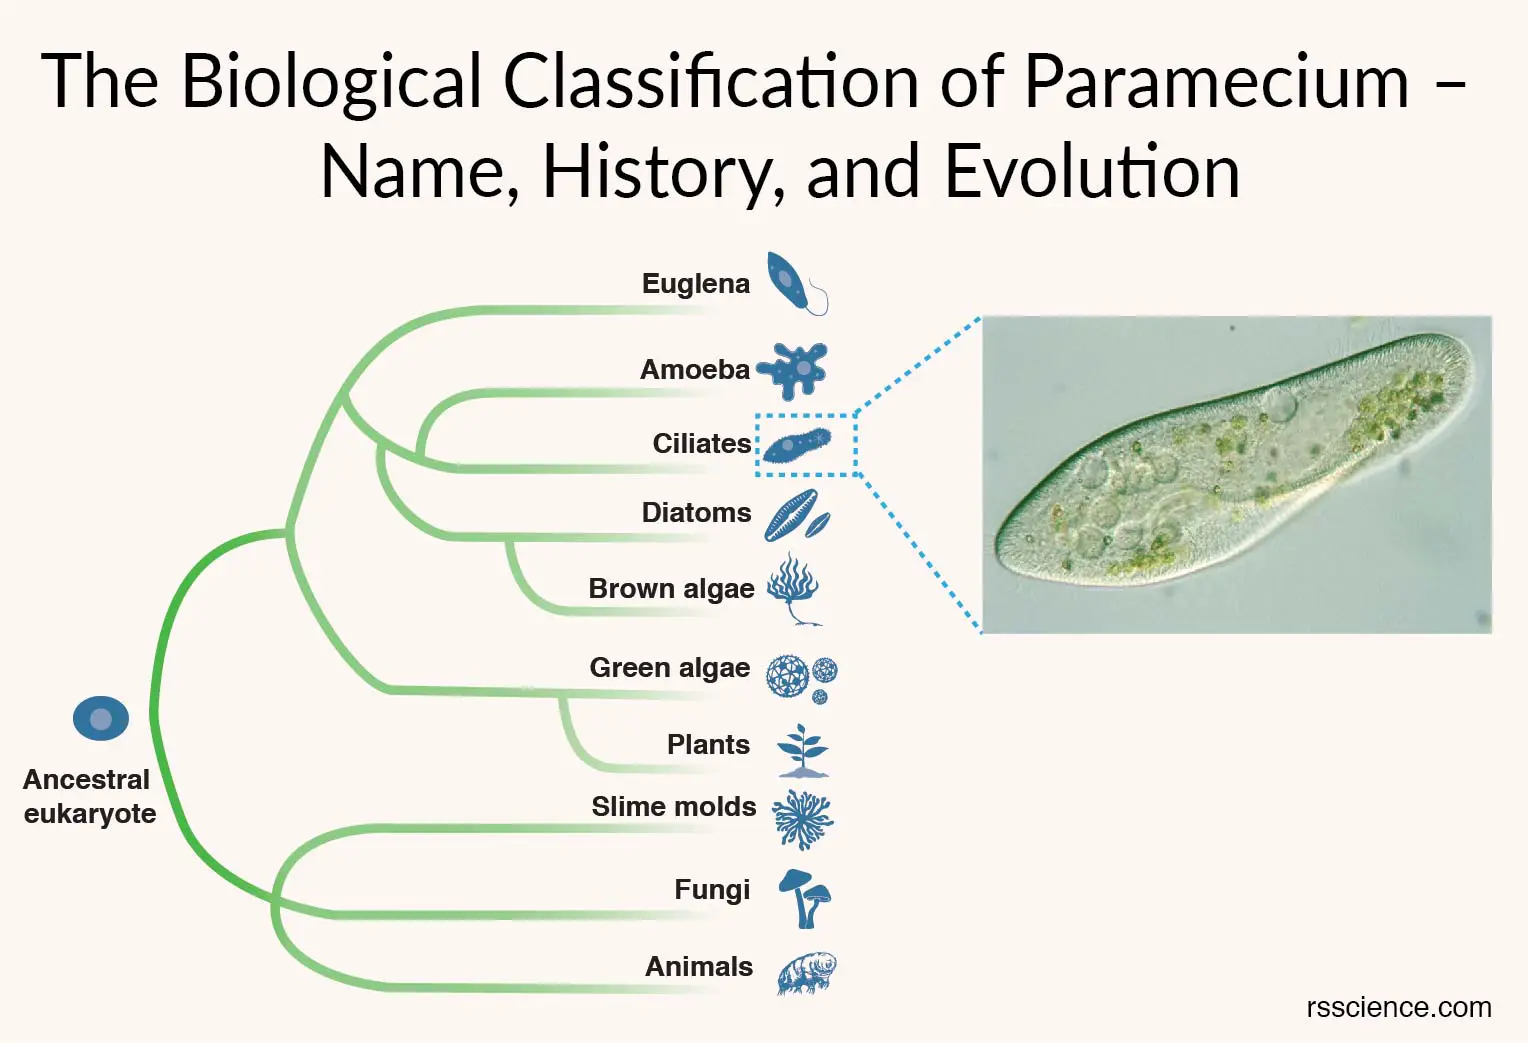 草履虫覆盖物的生物学分类